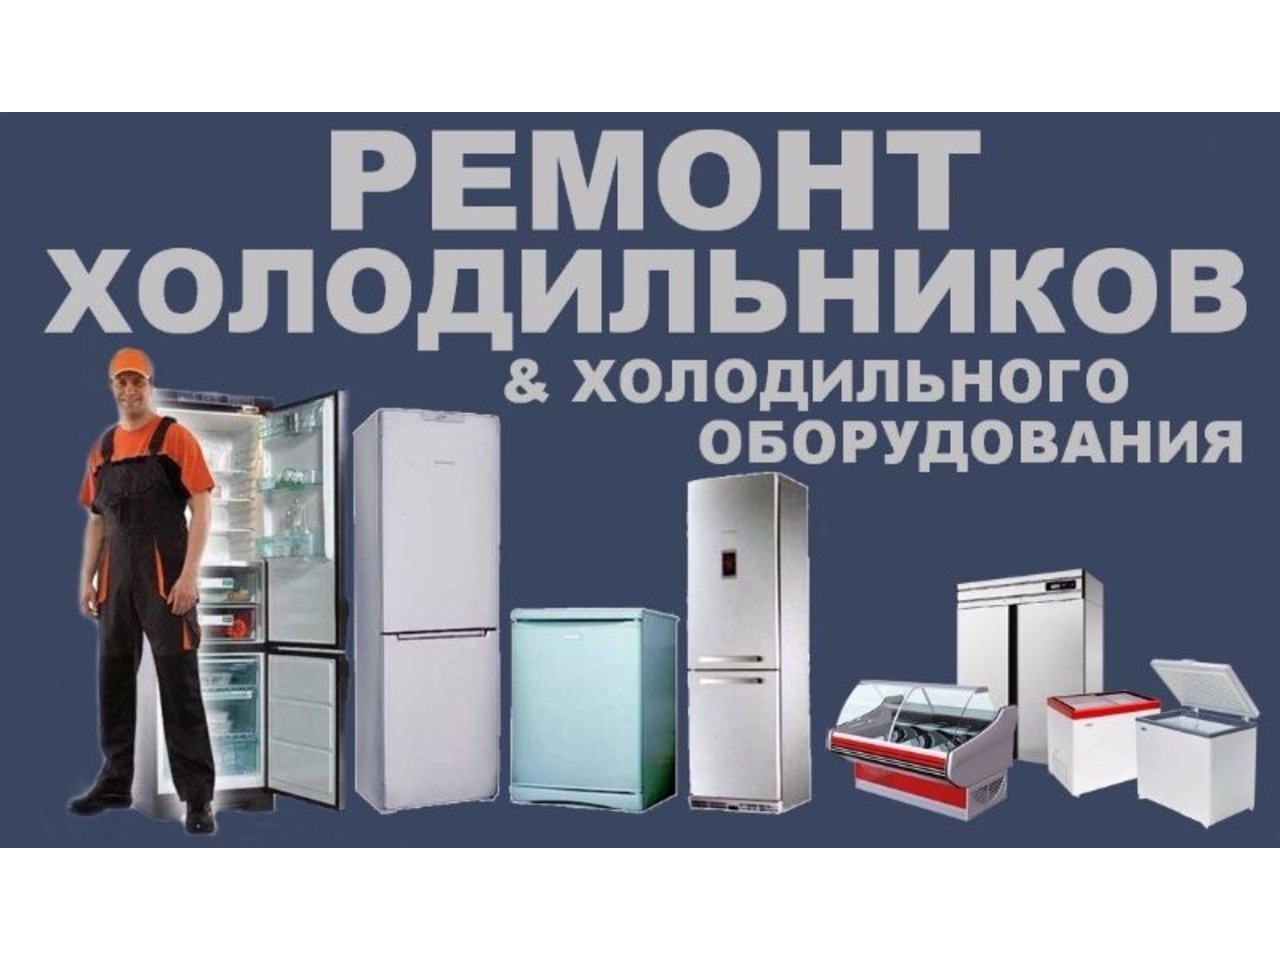 Холодильник ру ремонт. Реклама по ремонту холодильников. Ремонт холодильников реклама. Холодильники и холодильное оборудование Стиральные машины.